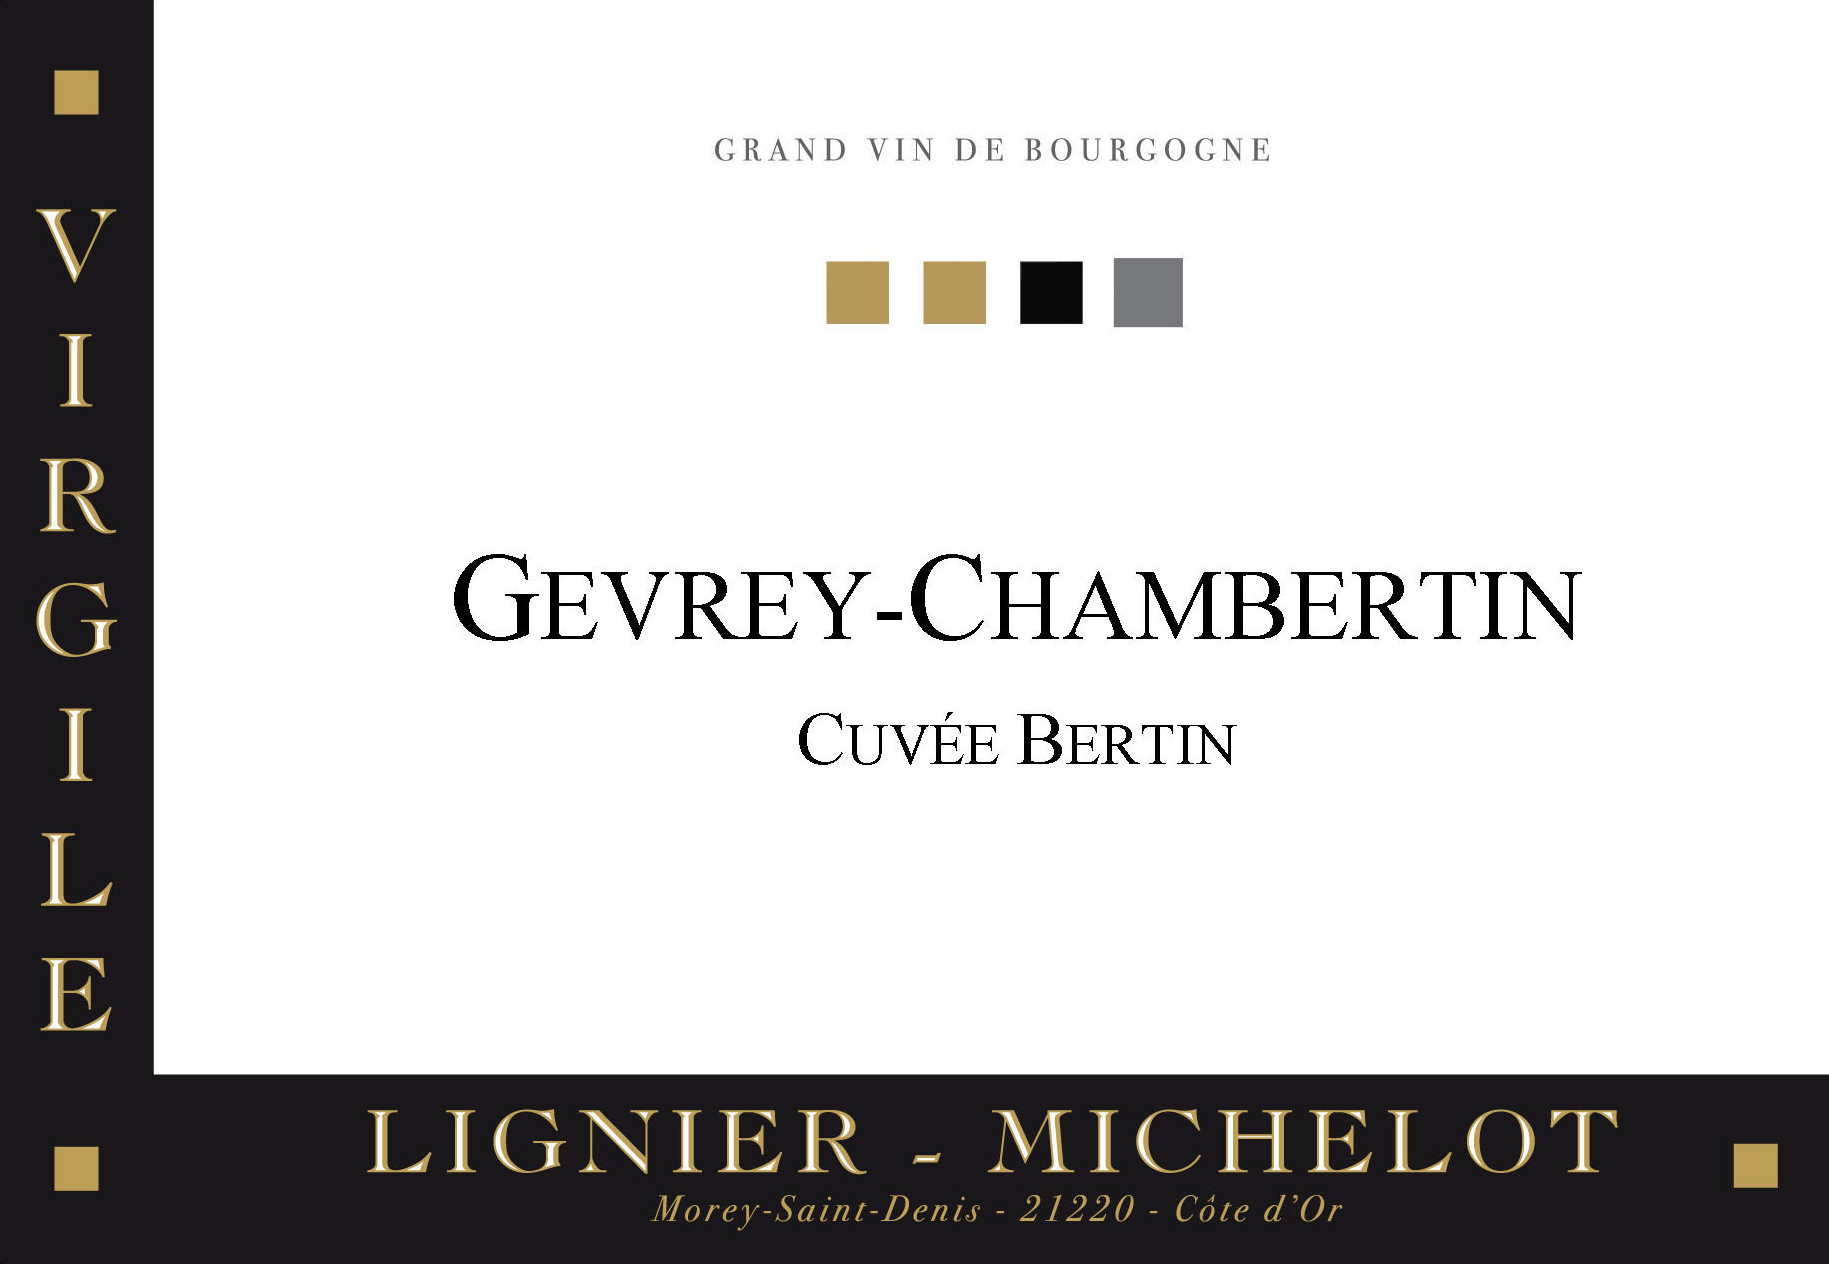 2017 Domaine Lignier-Michelot Gevrey Chambertin Cuvee Bertin image